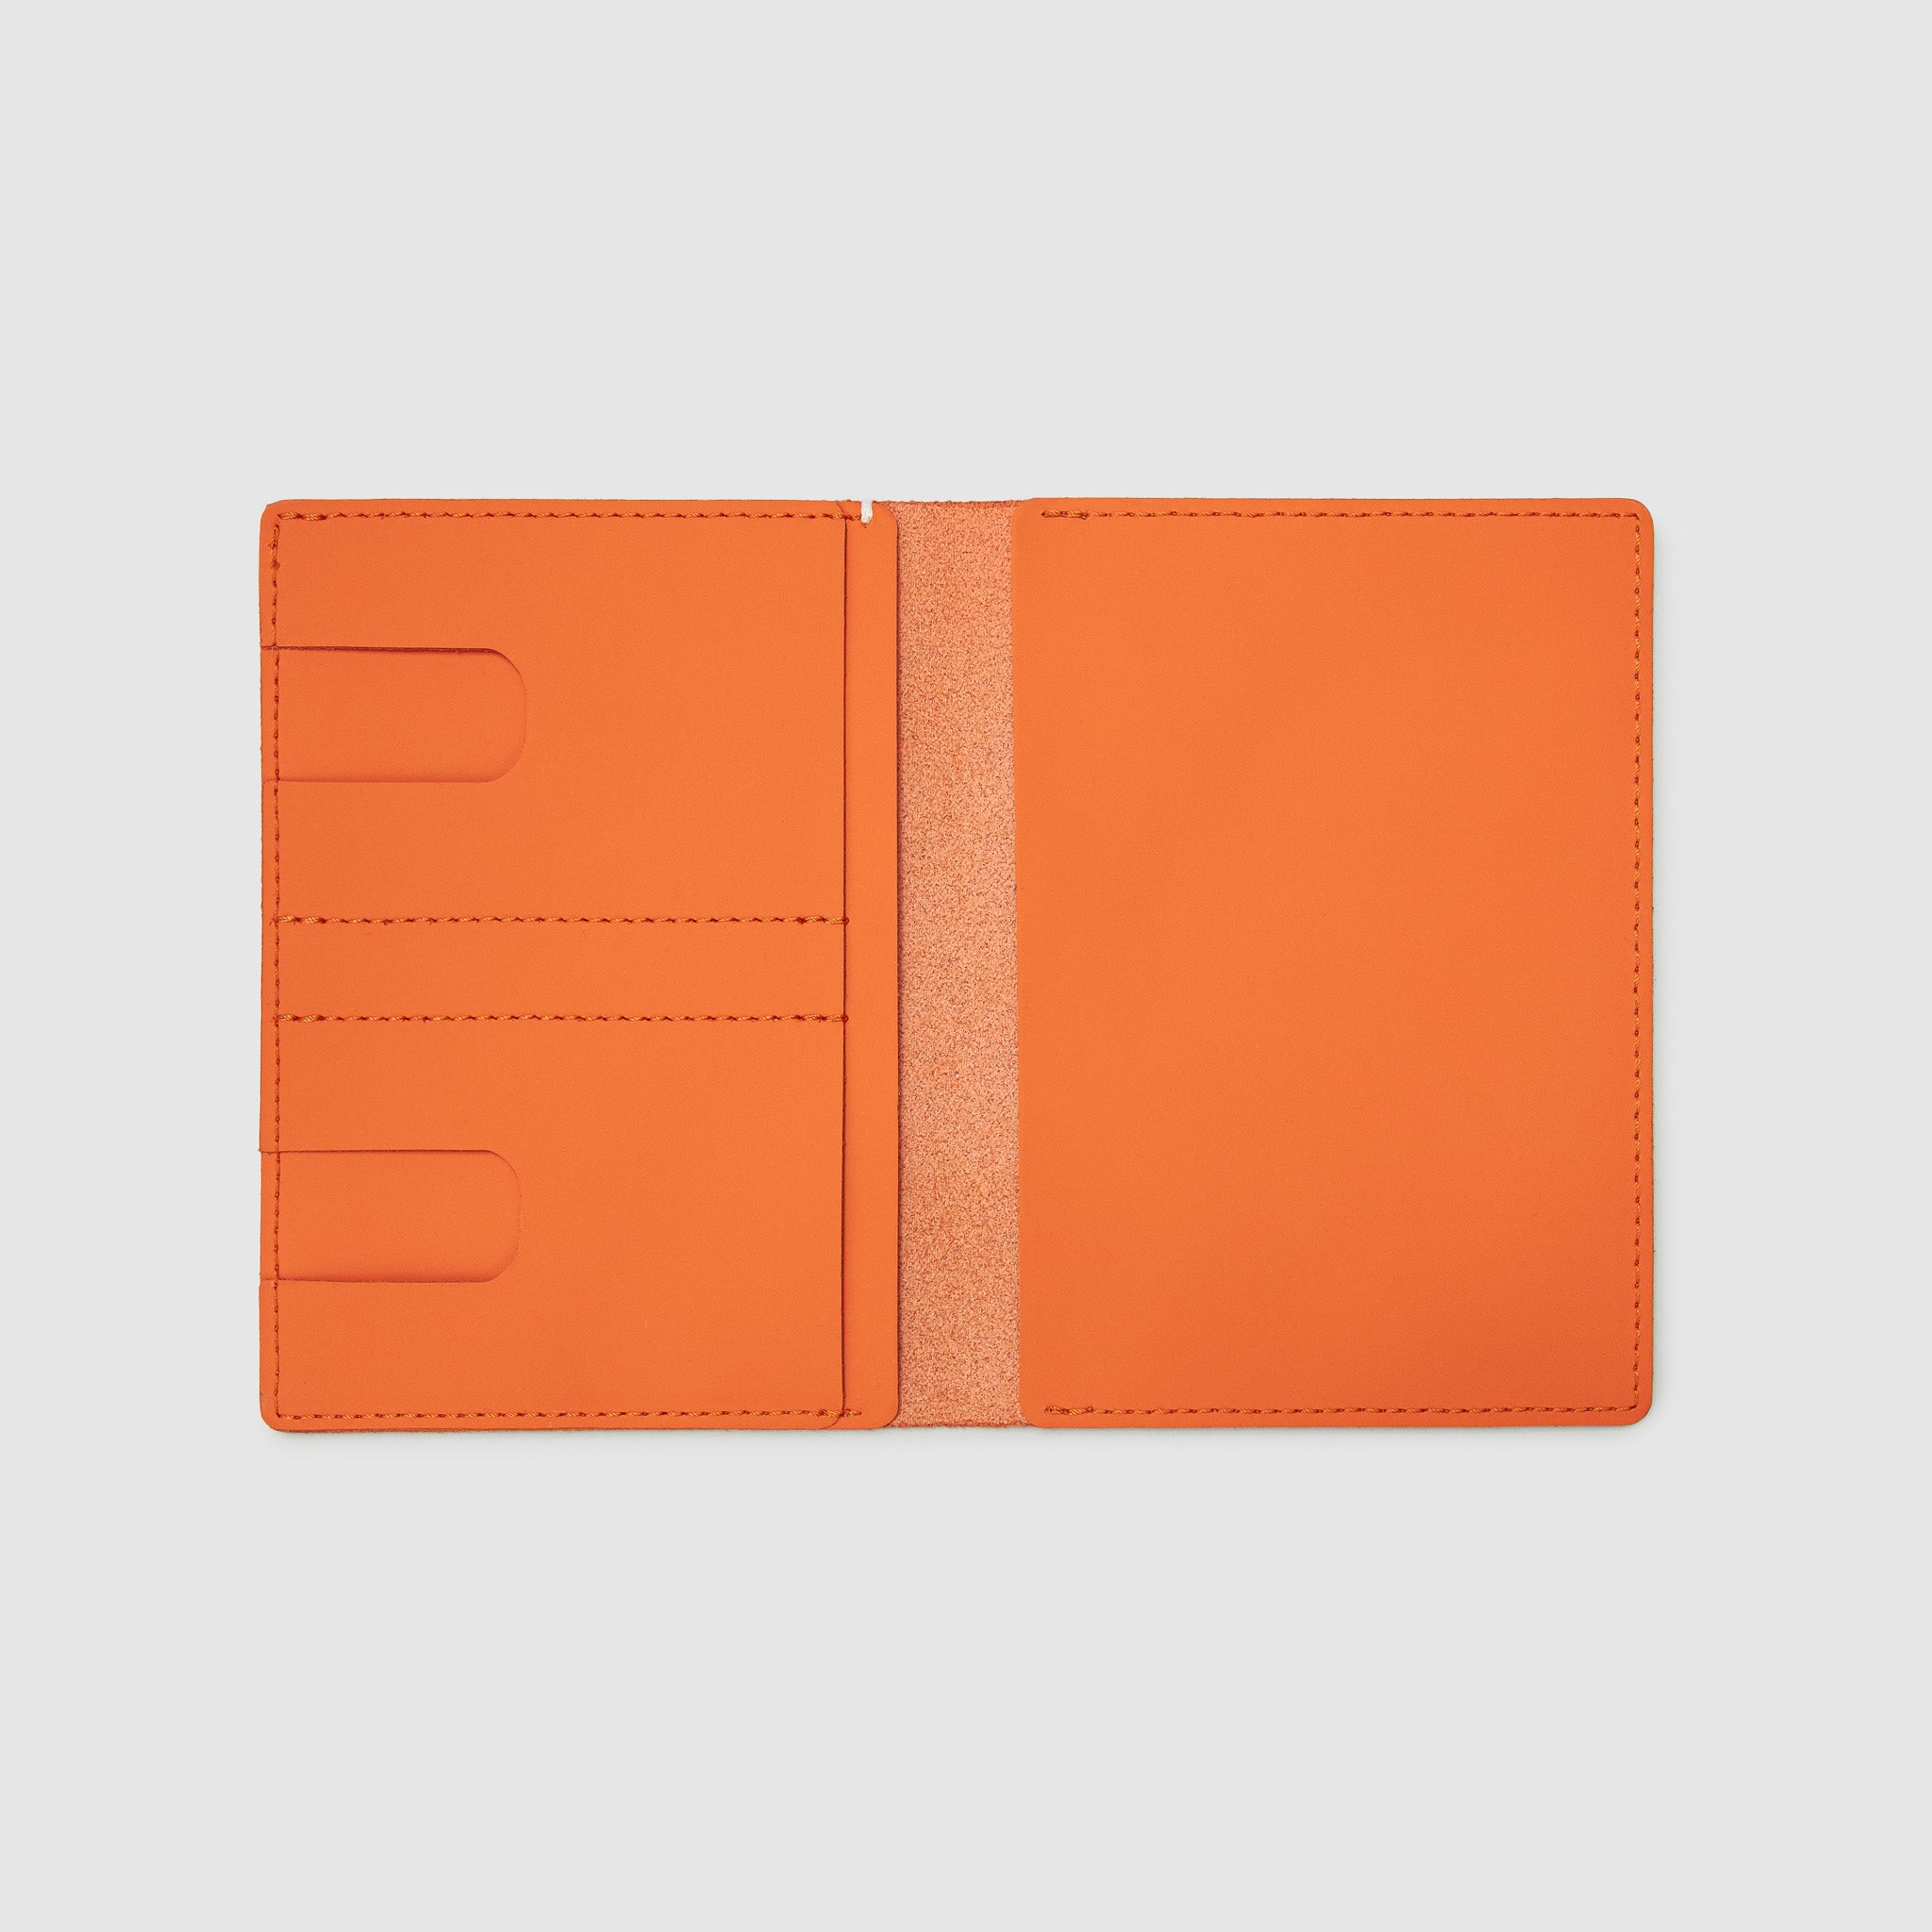 Designer Passport Cover - New York NYC